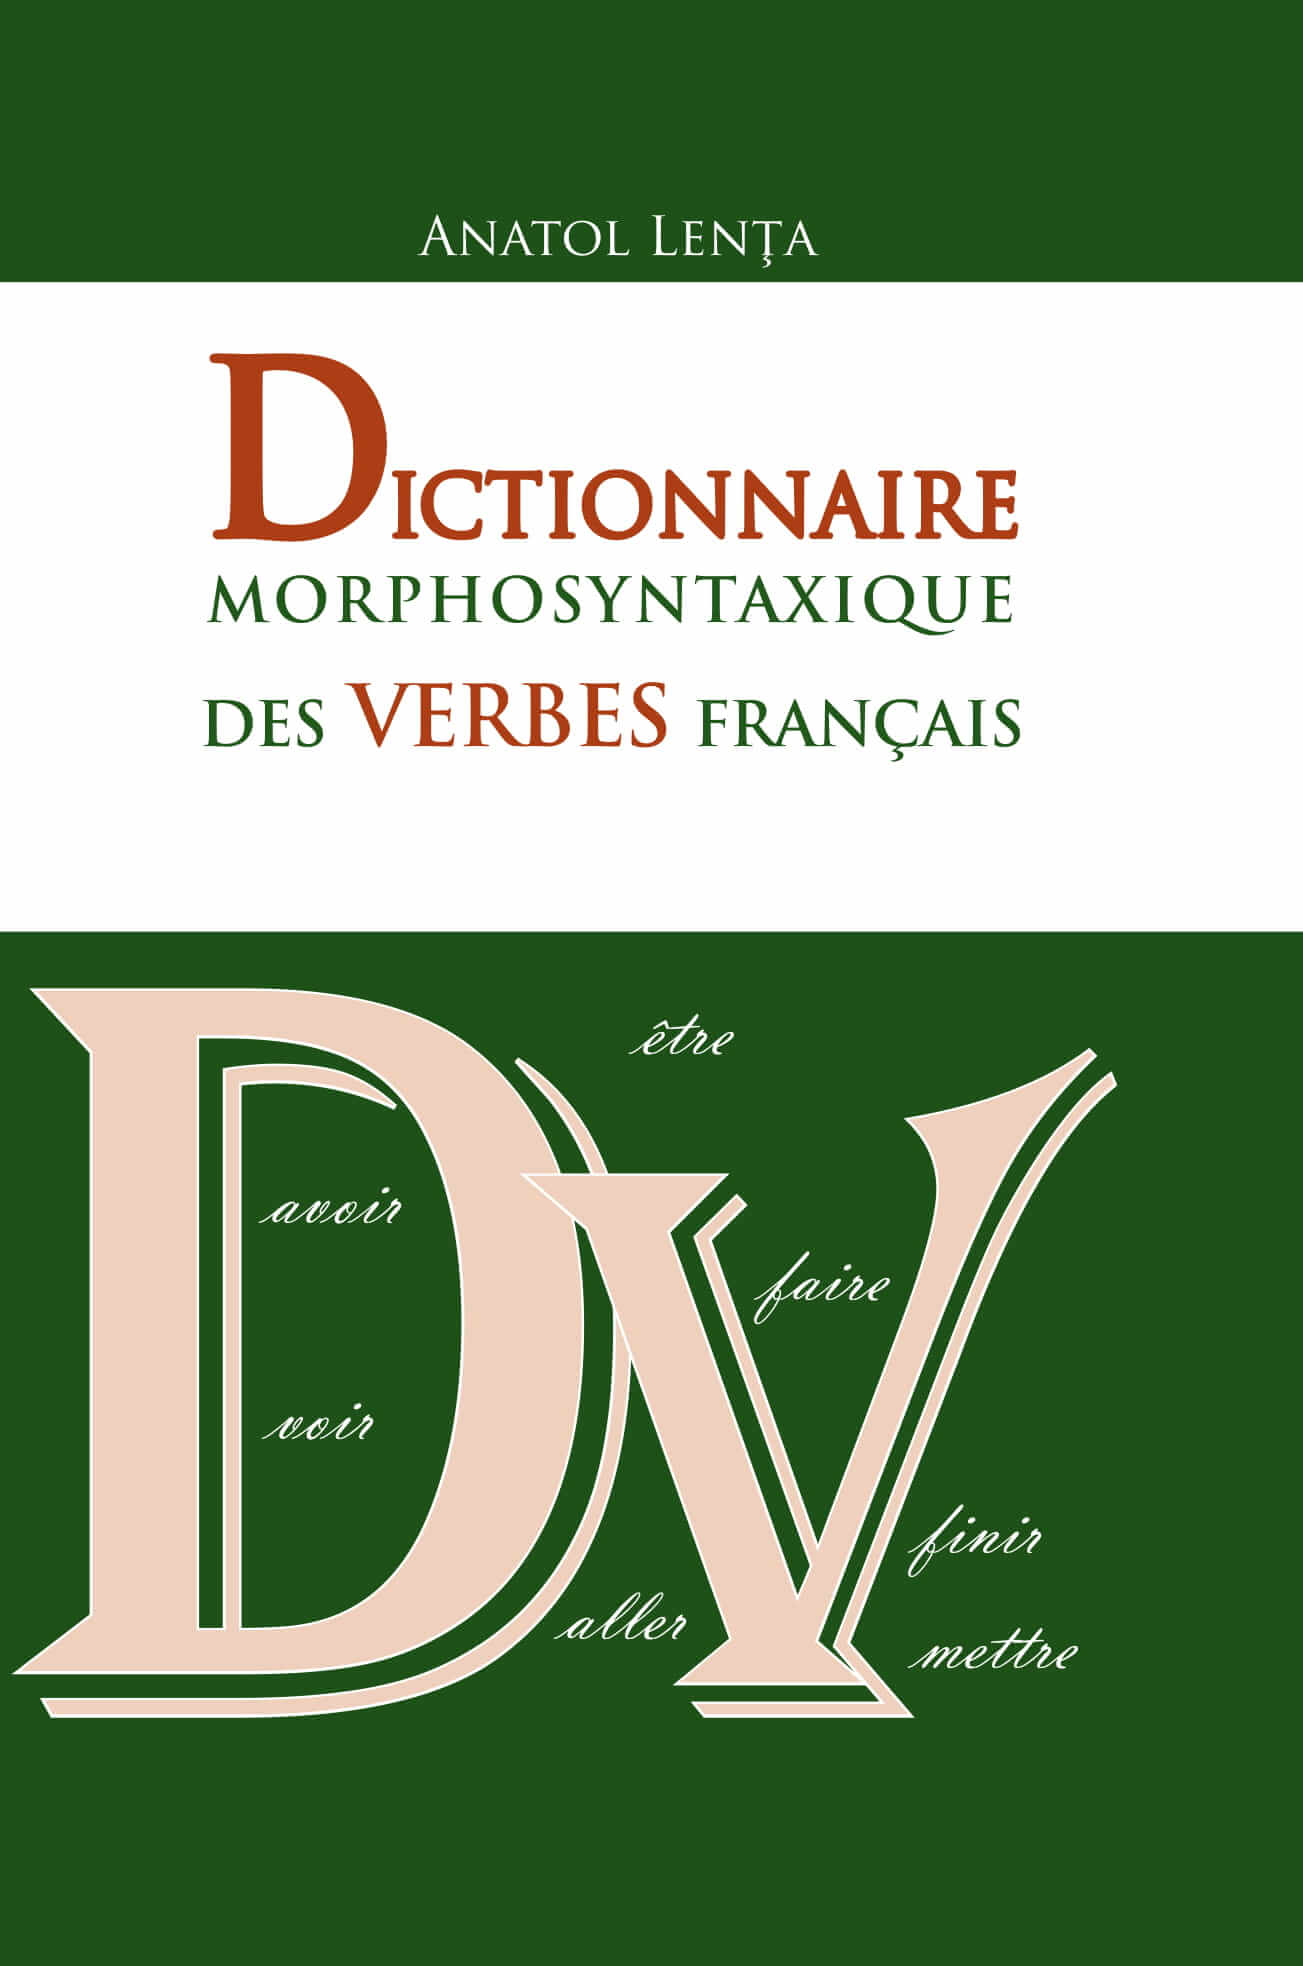 Dictionnaire morphosyntaxique des verbes francais